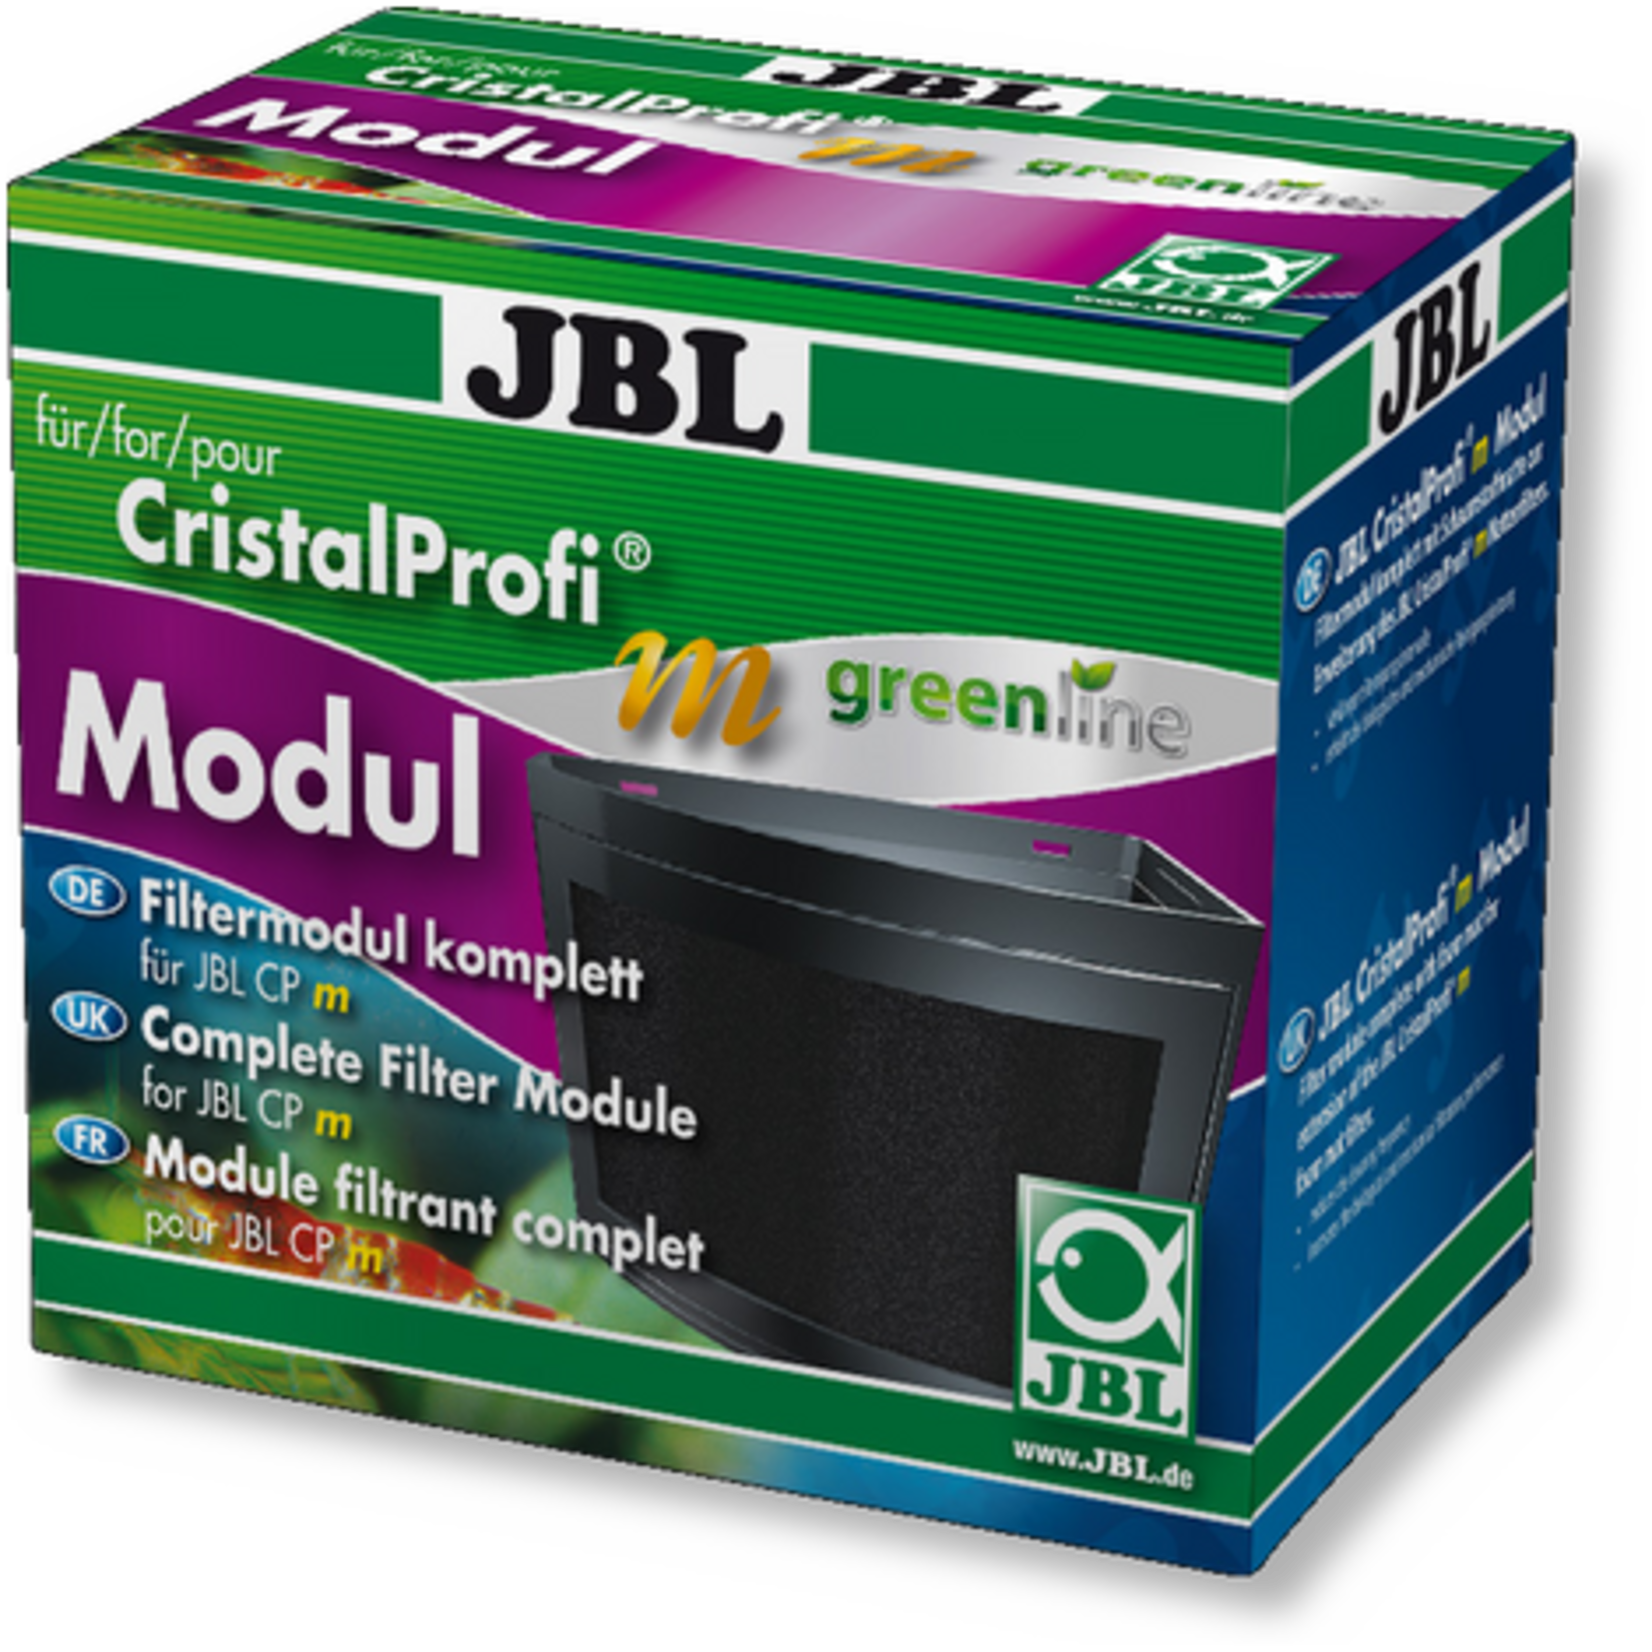 JBL JBL CristalProfi m greenline Modul